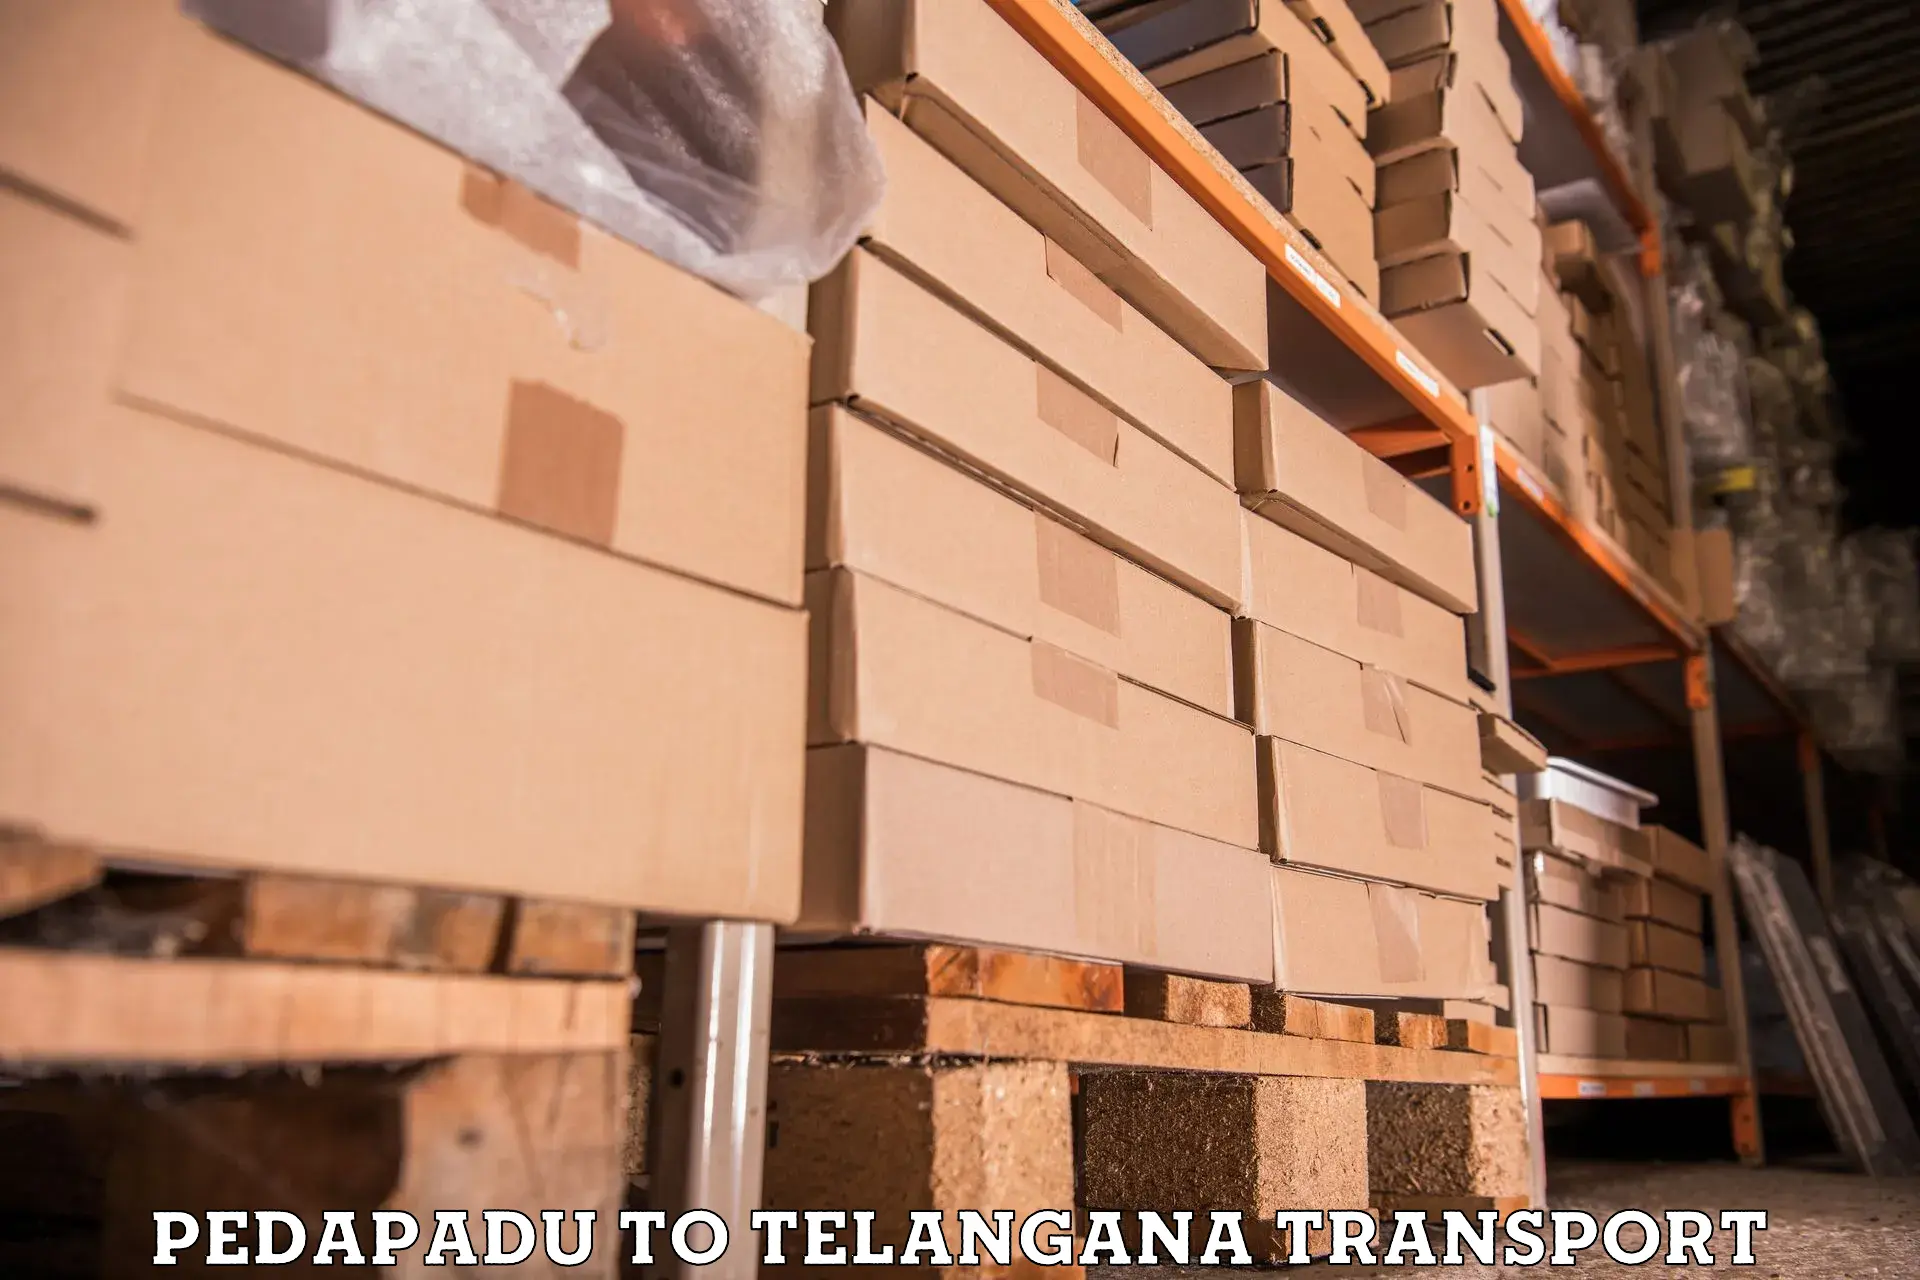 Container transport service Pedapadu to Chegunta